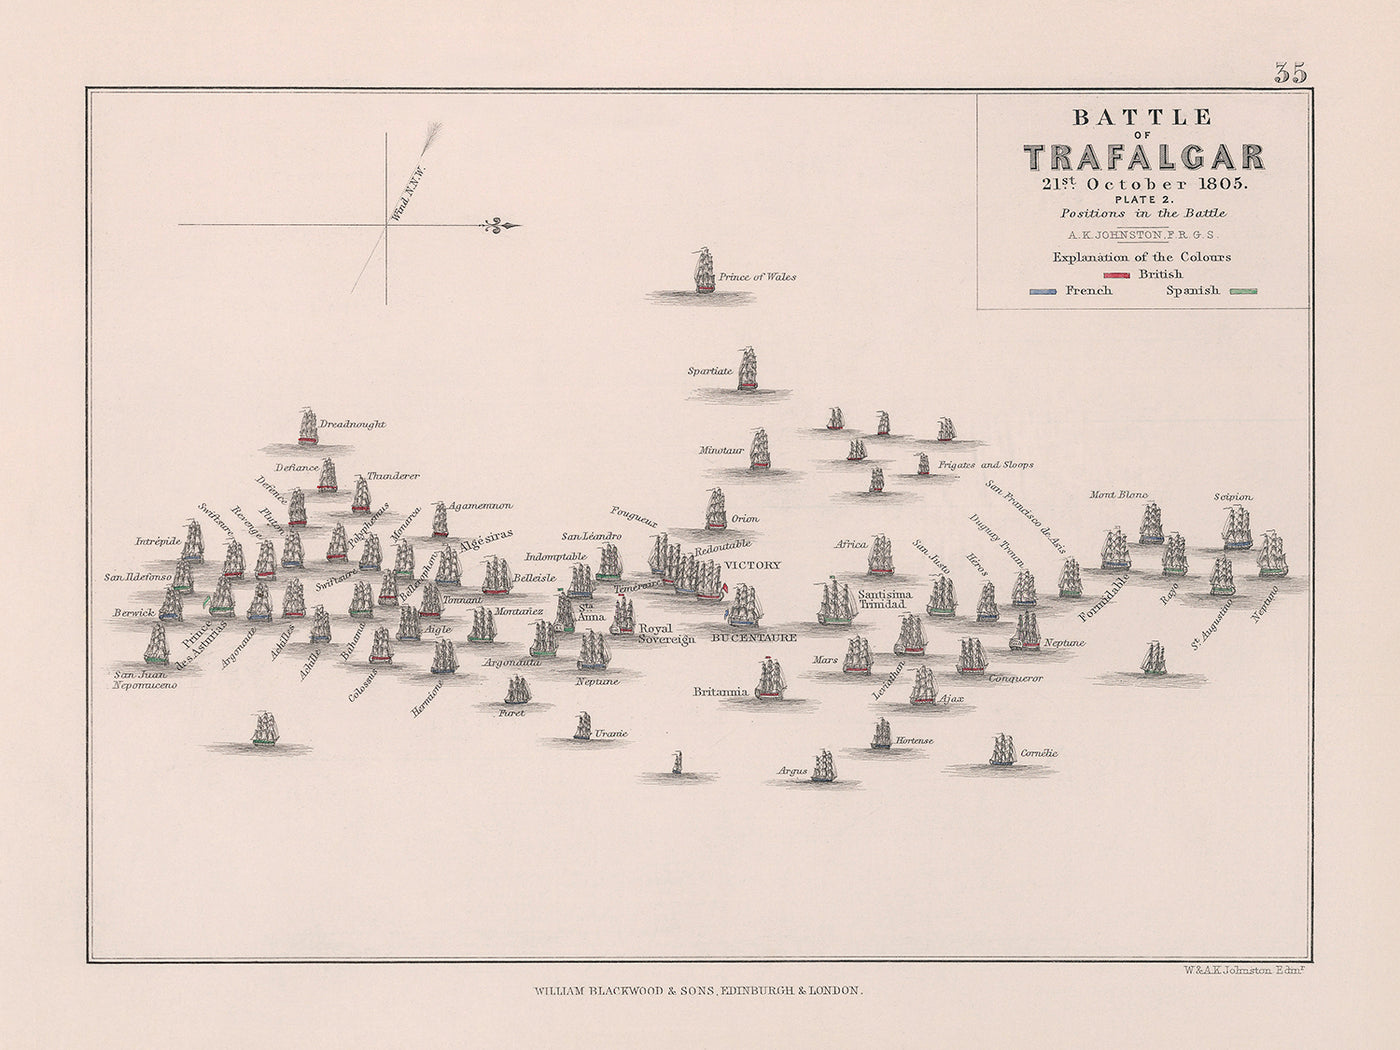 Battle of Trafalgar: Positions in the Battle by AK Johnston, 1852